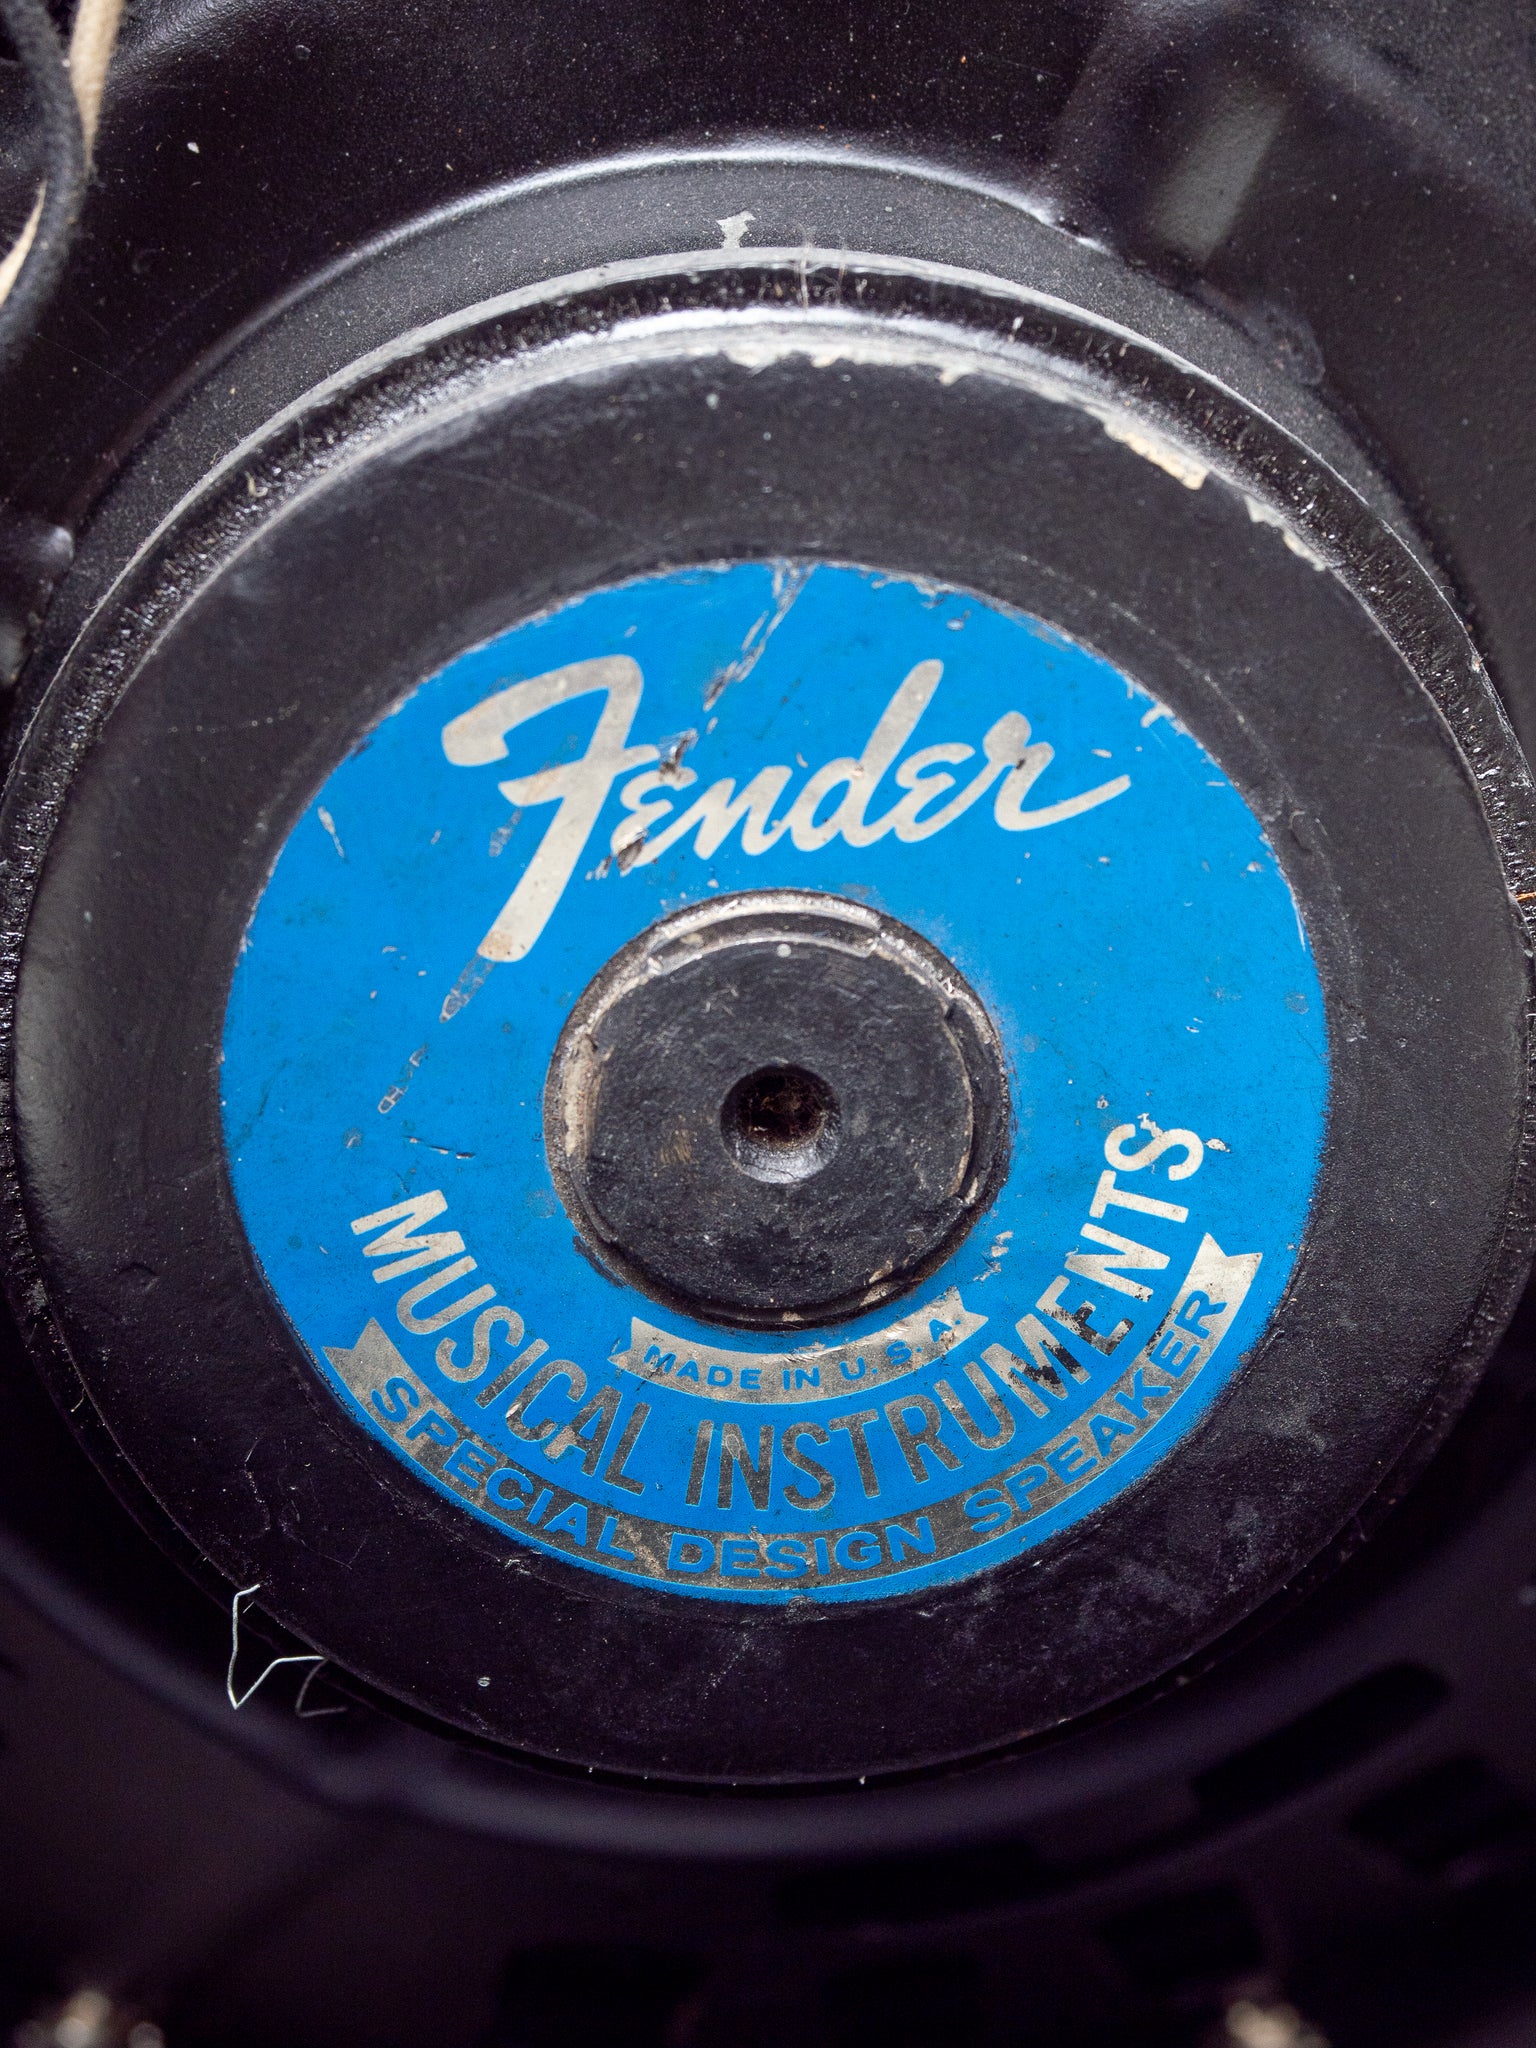 1969 Fender Deluxe Reverb